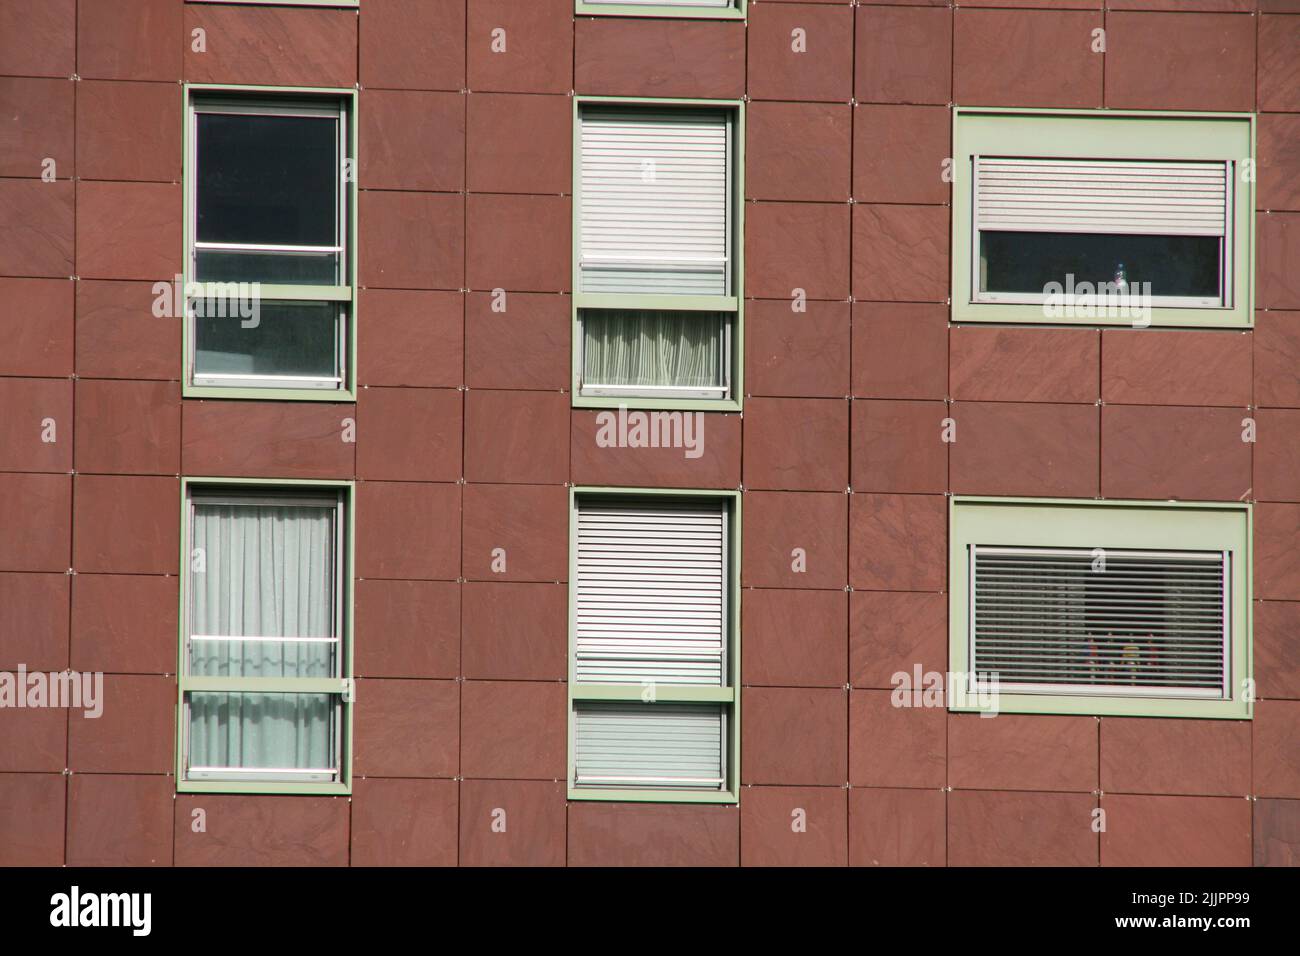 Un gros plan de la façade d'un immeuble résidentiel dans la ville de Bilbao, en Espagne Banque D'Images